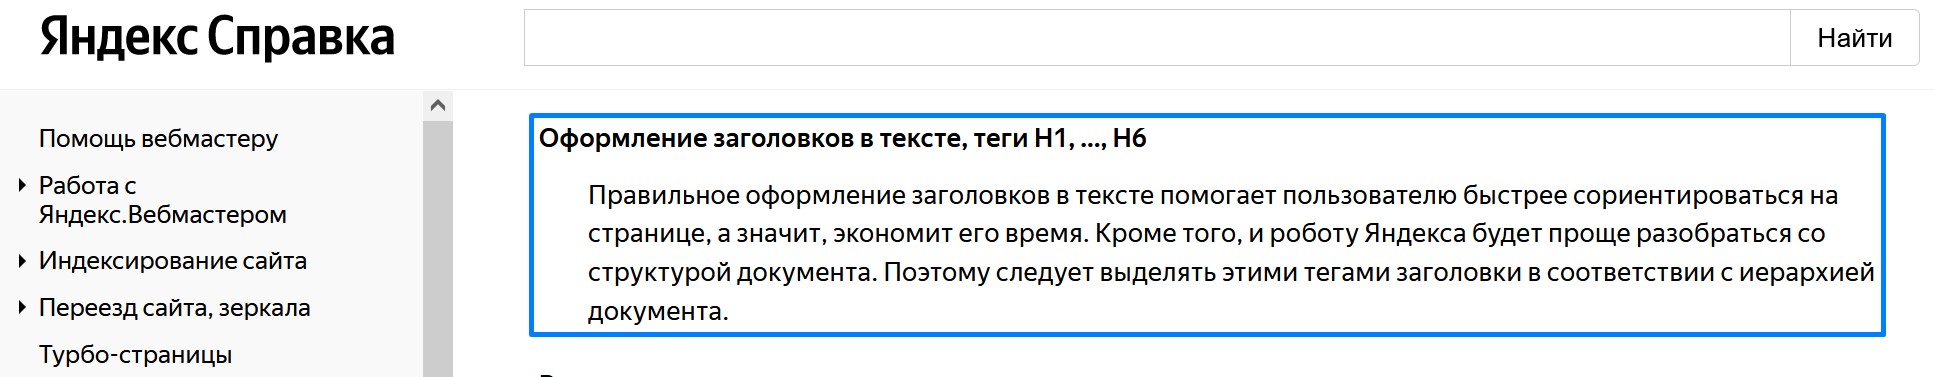 Цитата Яндекса про H1